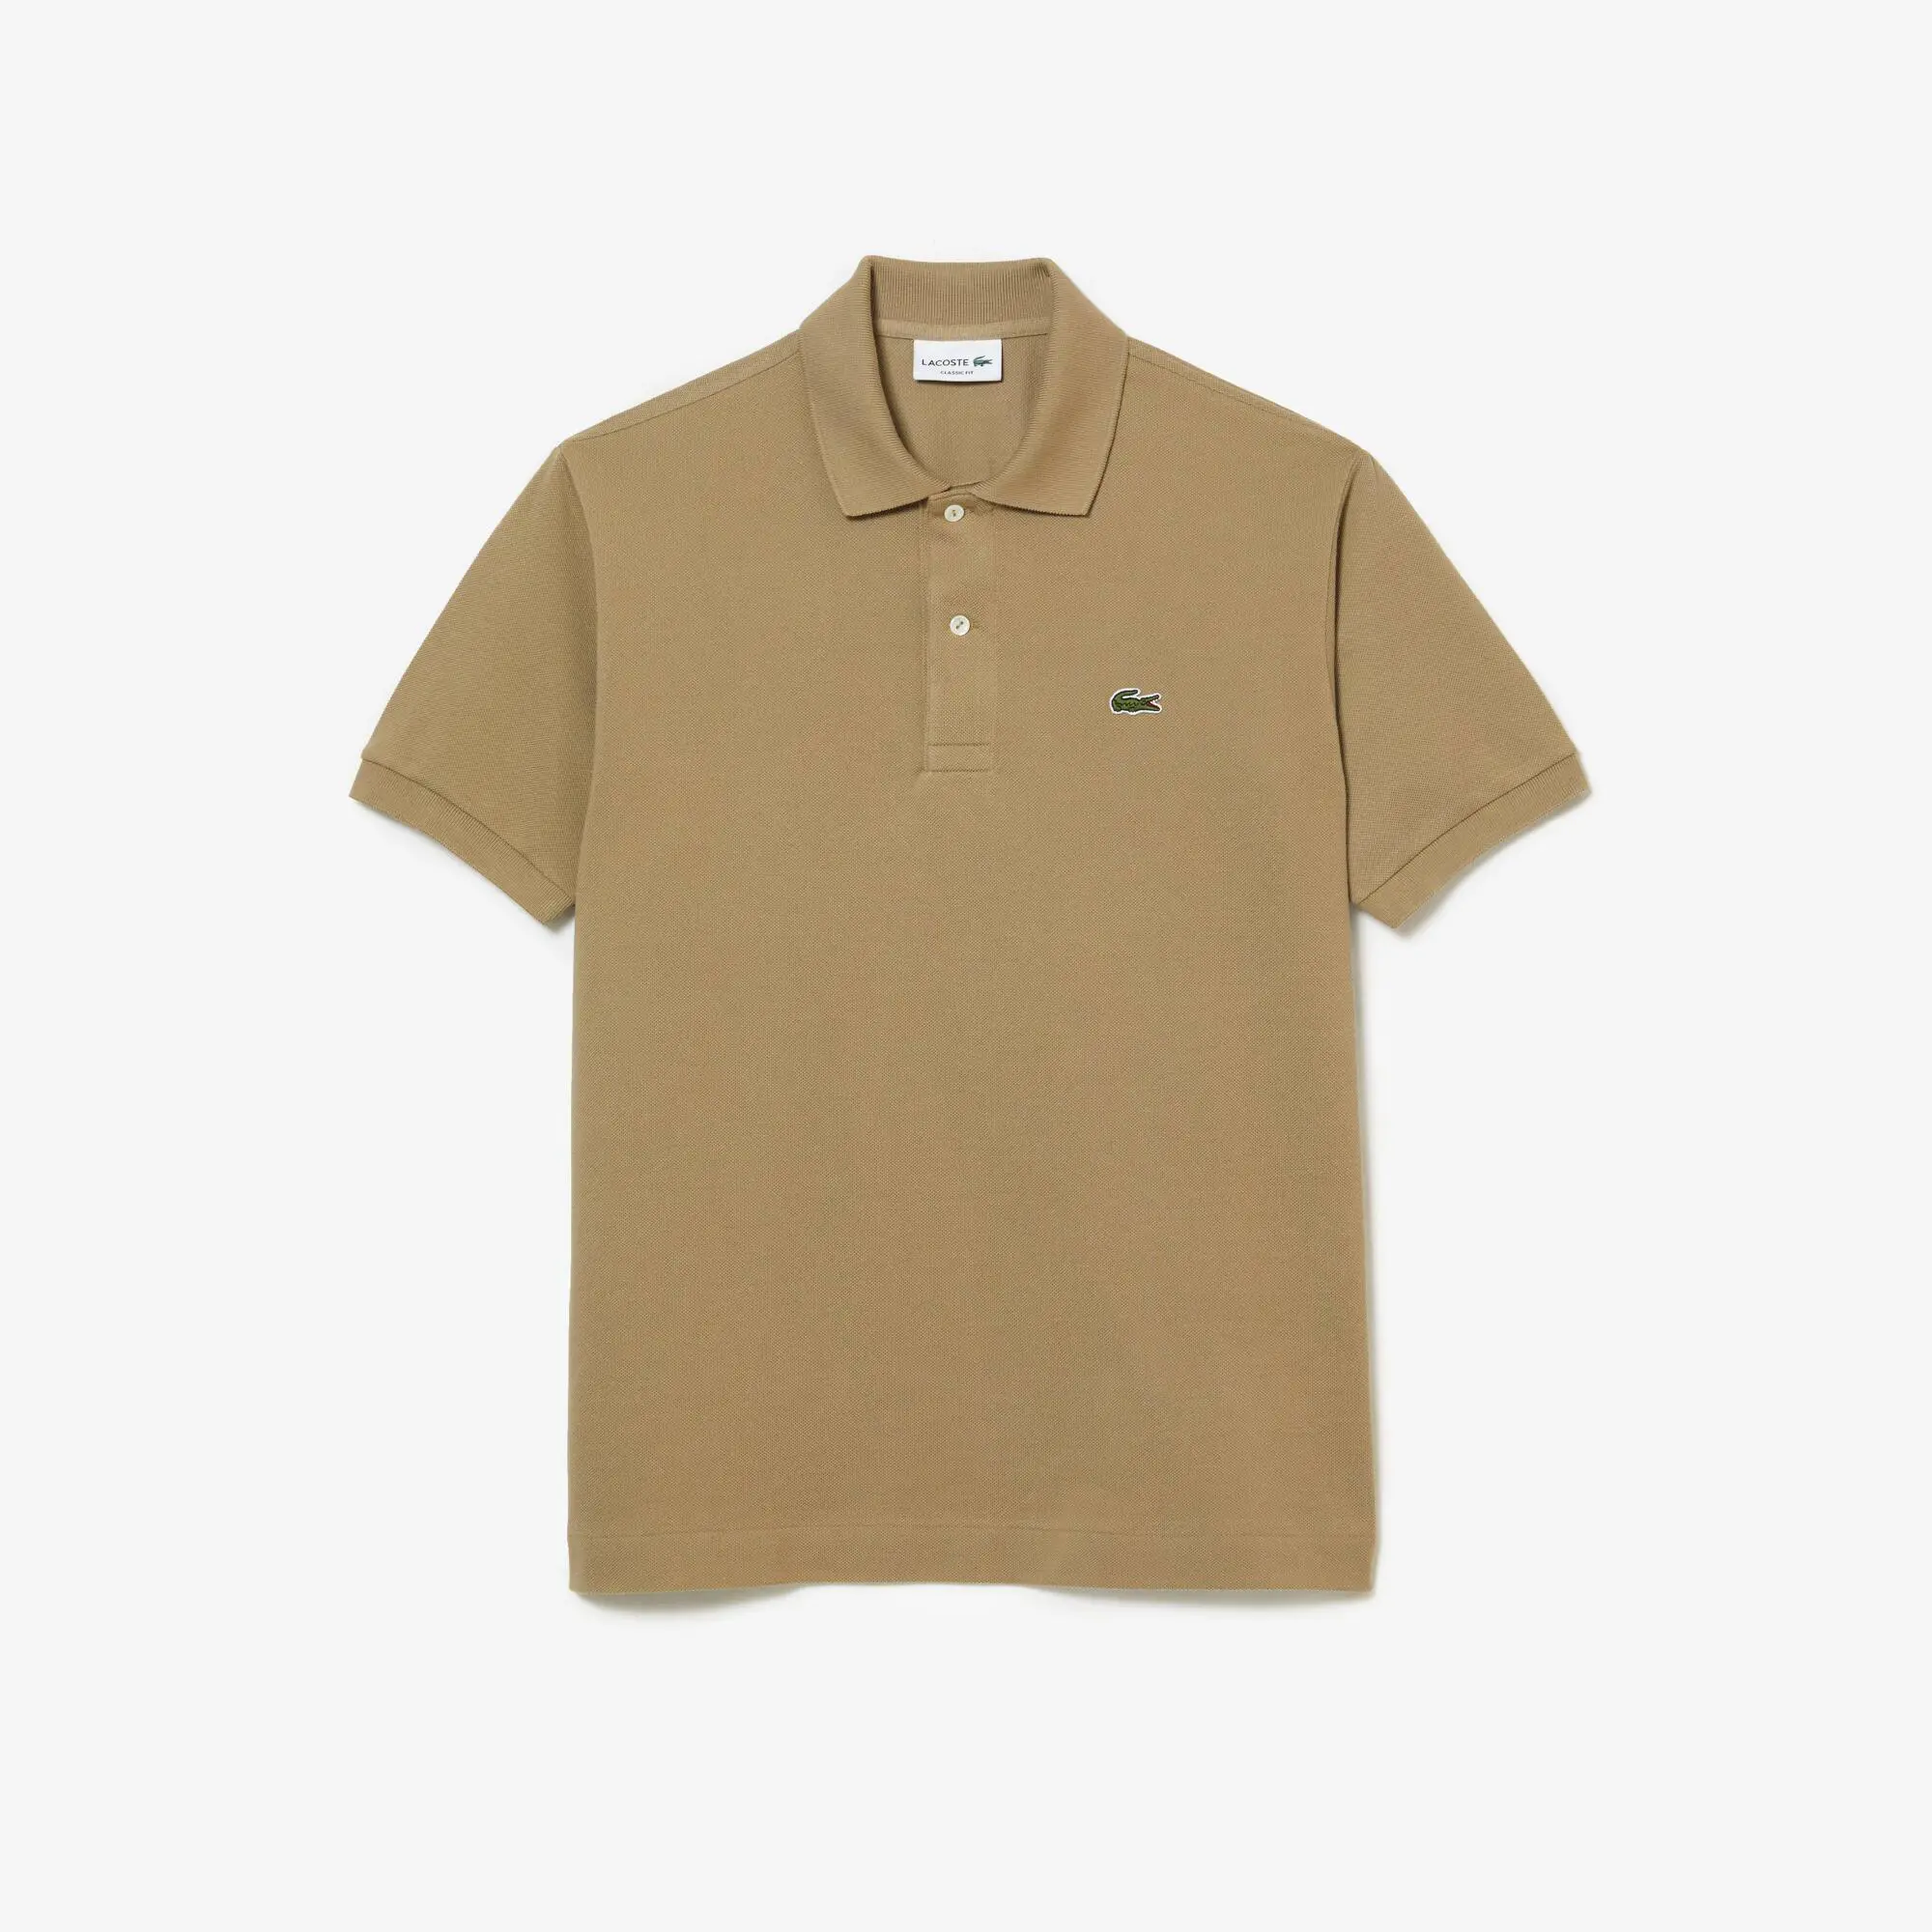 Lacoste Original L.12.12 petit piqué cotton Polo Shirt. 2